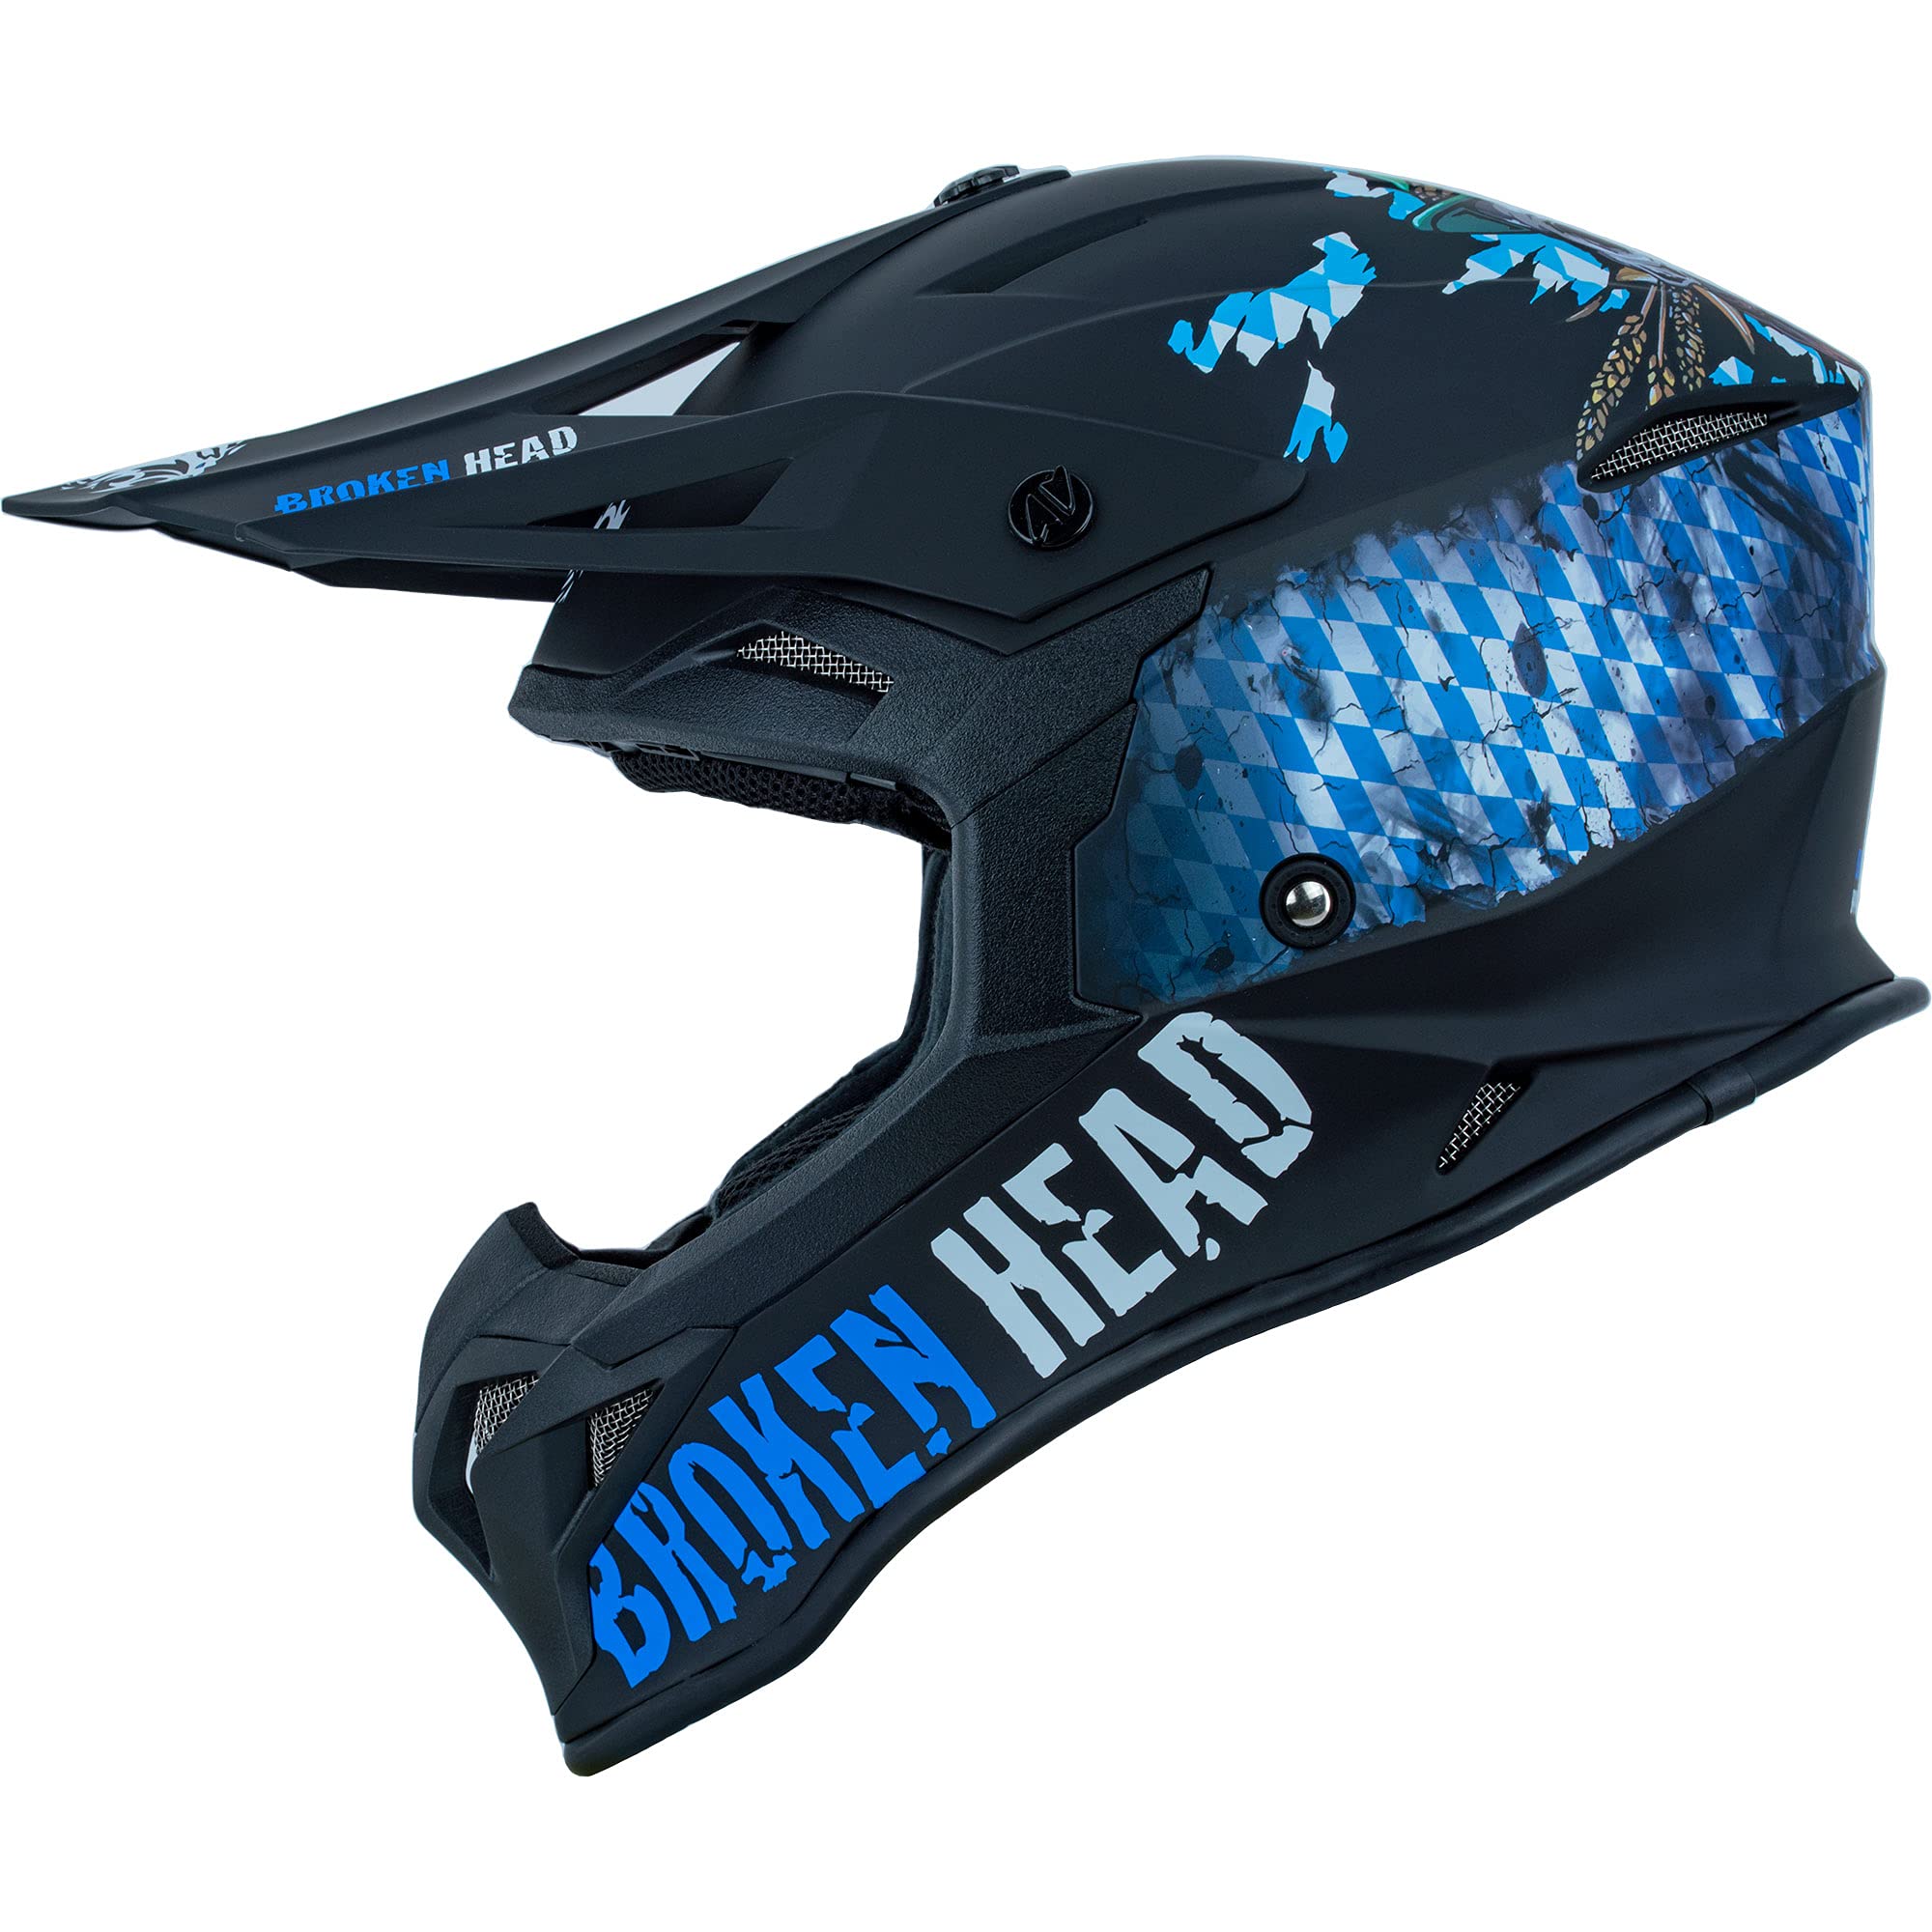 Broken Head Bavarian Patriot MX-2 Motocross-Helm - Sportlicher Motorradhelm & Crosshelm - Helm mit Bayern Lifestyle Design, Blau/Schwarz (L (59-60 cm))